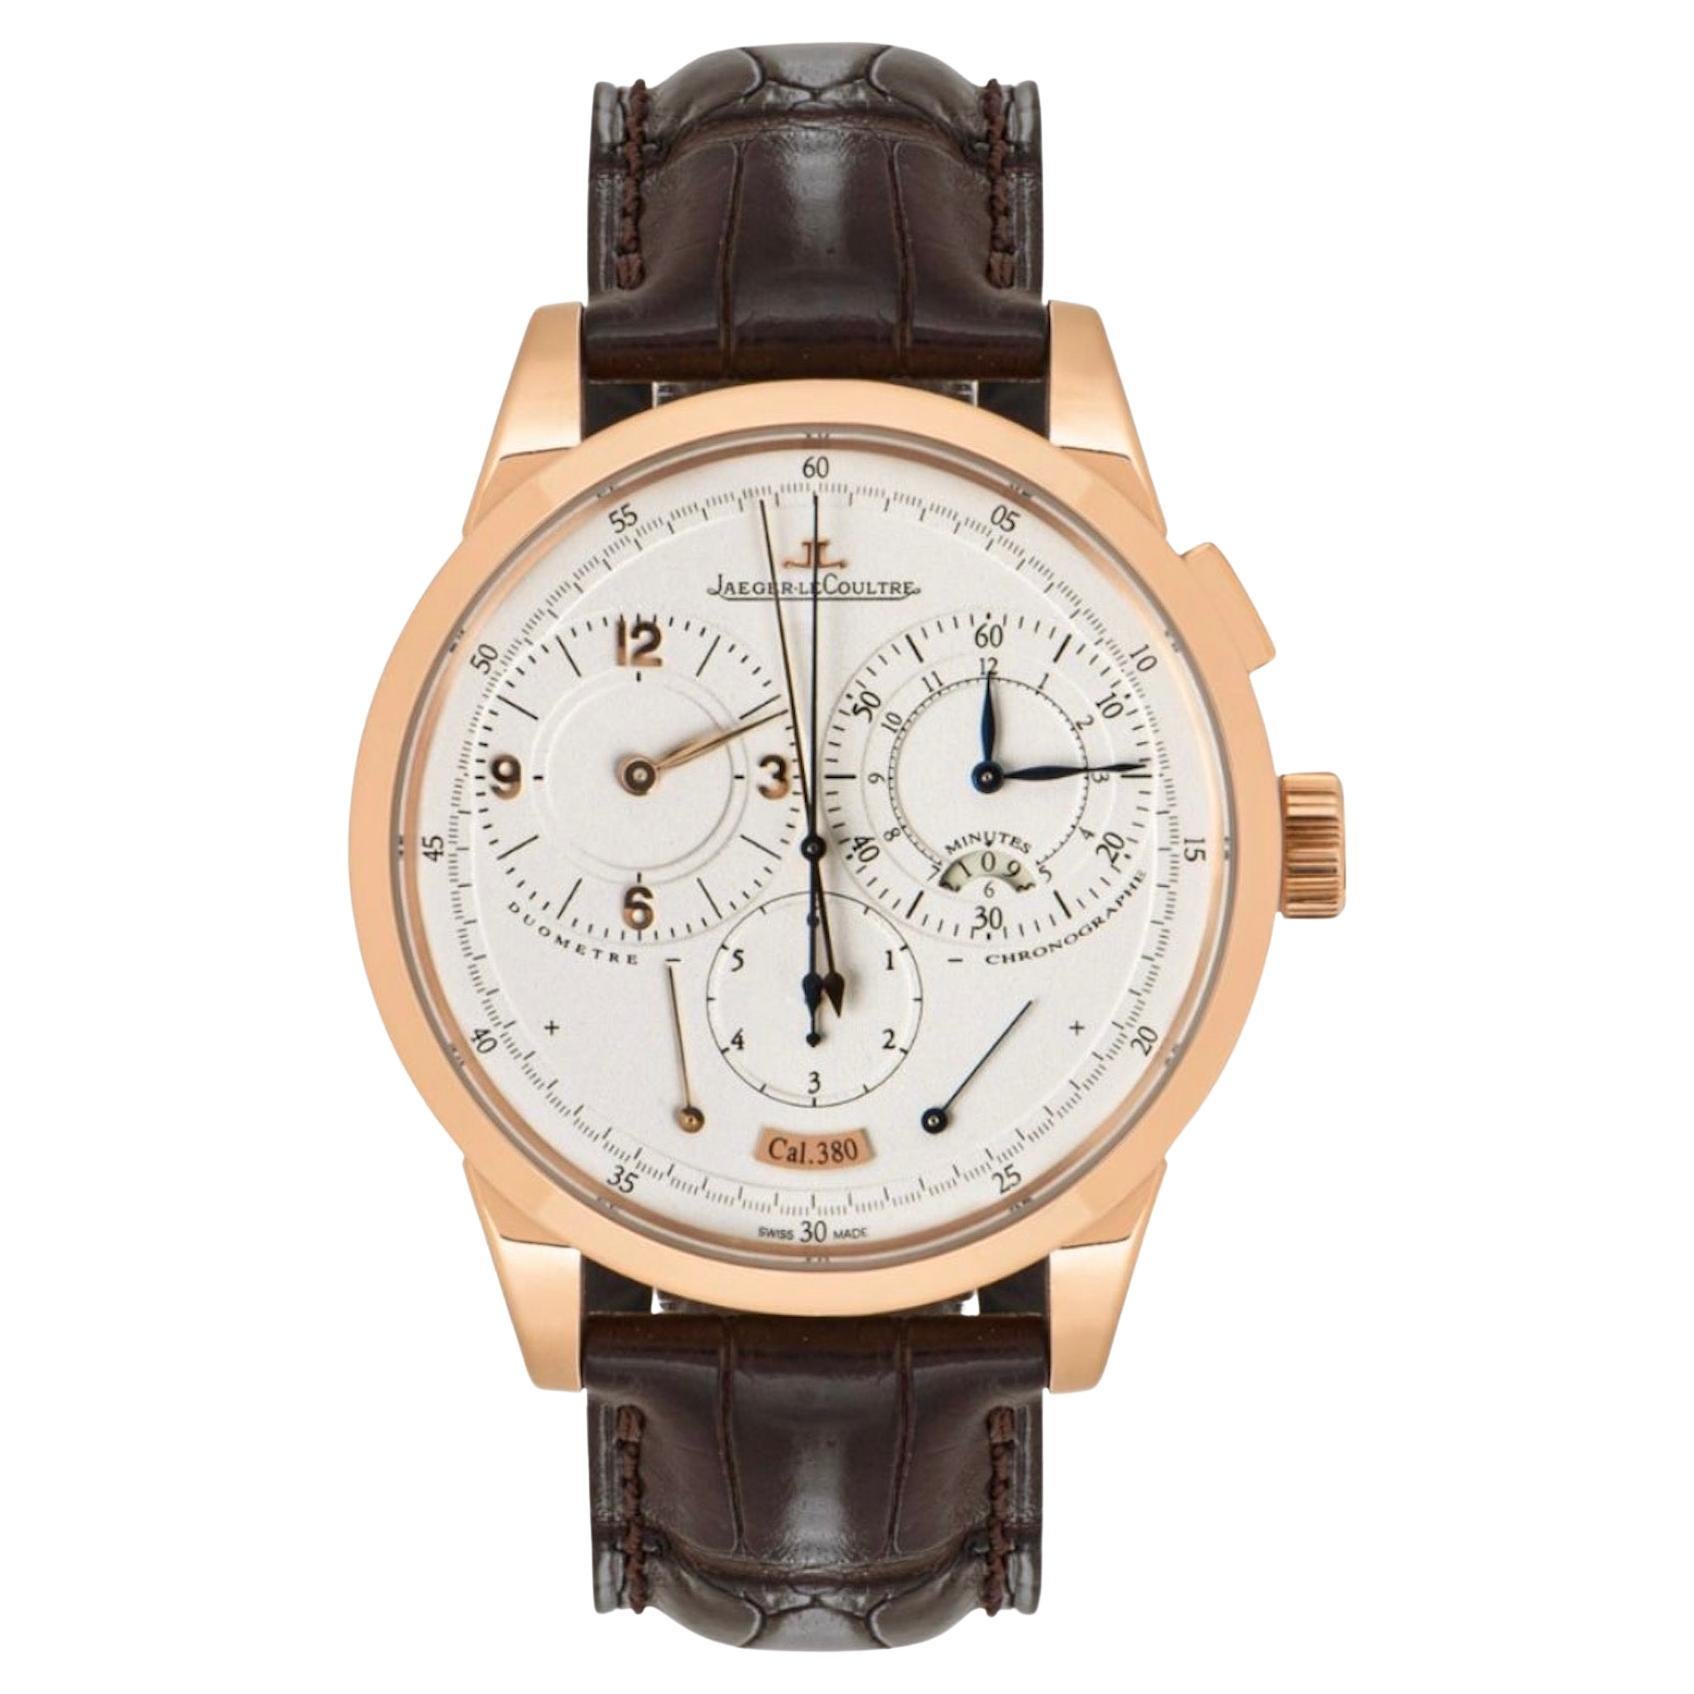 Une montre-bracelet classique Duometre Chronograph en or rose de Jaeger-LeCoultre. Il est doté d'un cadran crème avec un indicateur de réserve de marche, de 3 sous-cadrans indiquant les 12 heures, les minutes et une petite seconde. Le cadran est